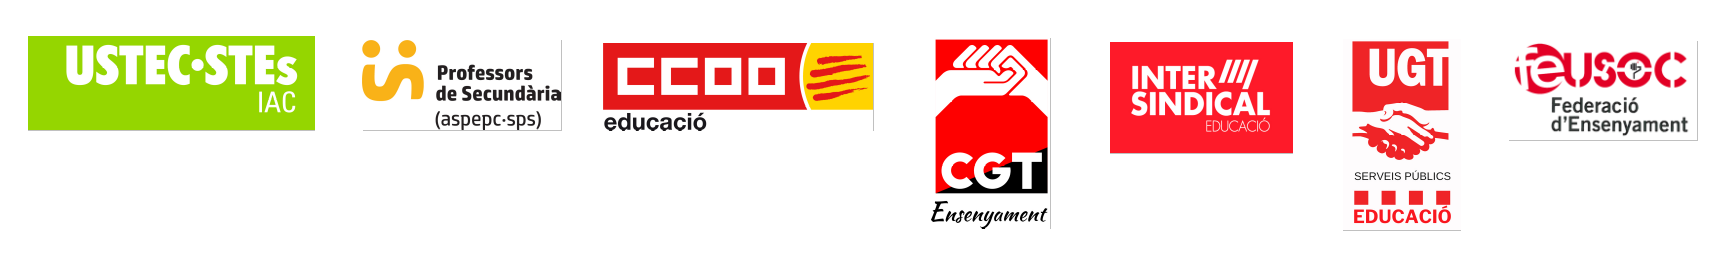 logos sindicats